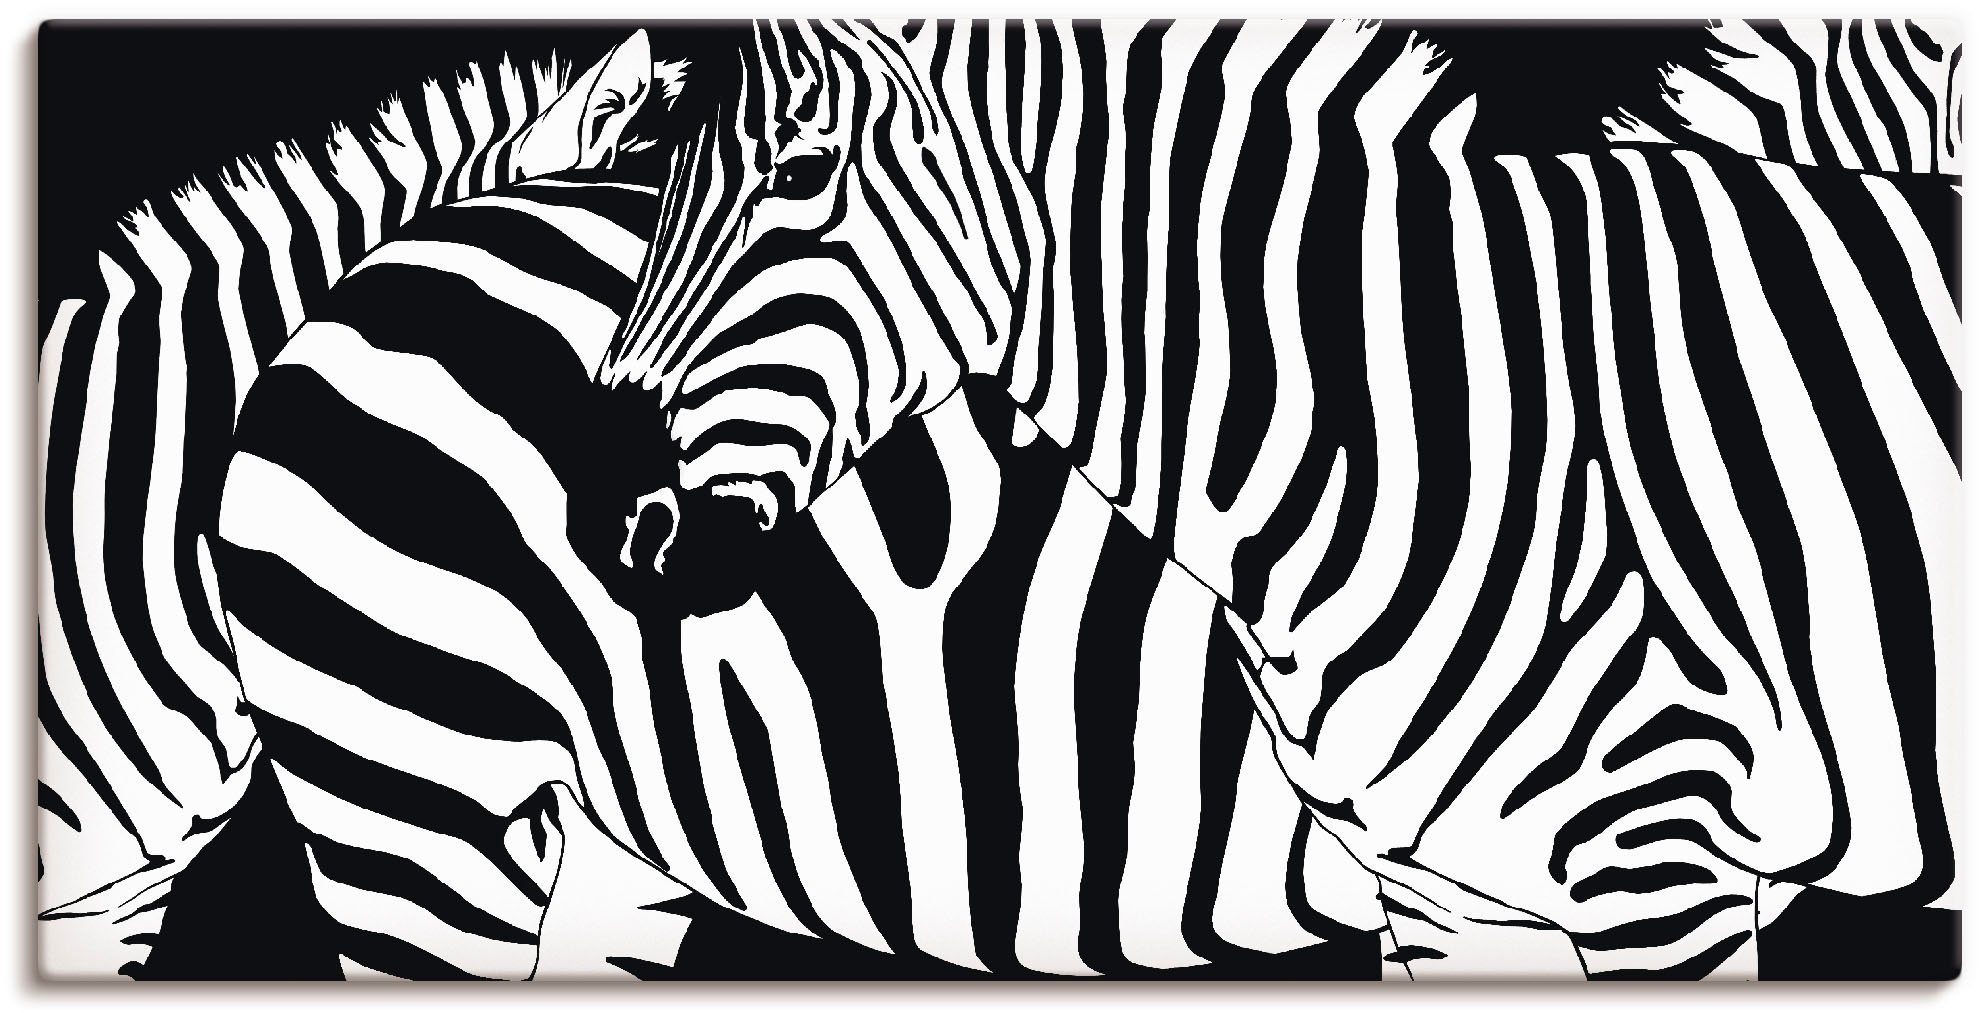 Artland Artprint Zebrastrepen in vele afmetingen & productsoorten -artprint op linnen, poster, muursticker / wandfolie ook geschikt voor de badkamer (1 stuk)